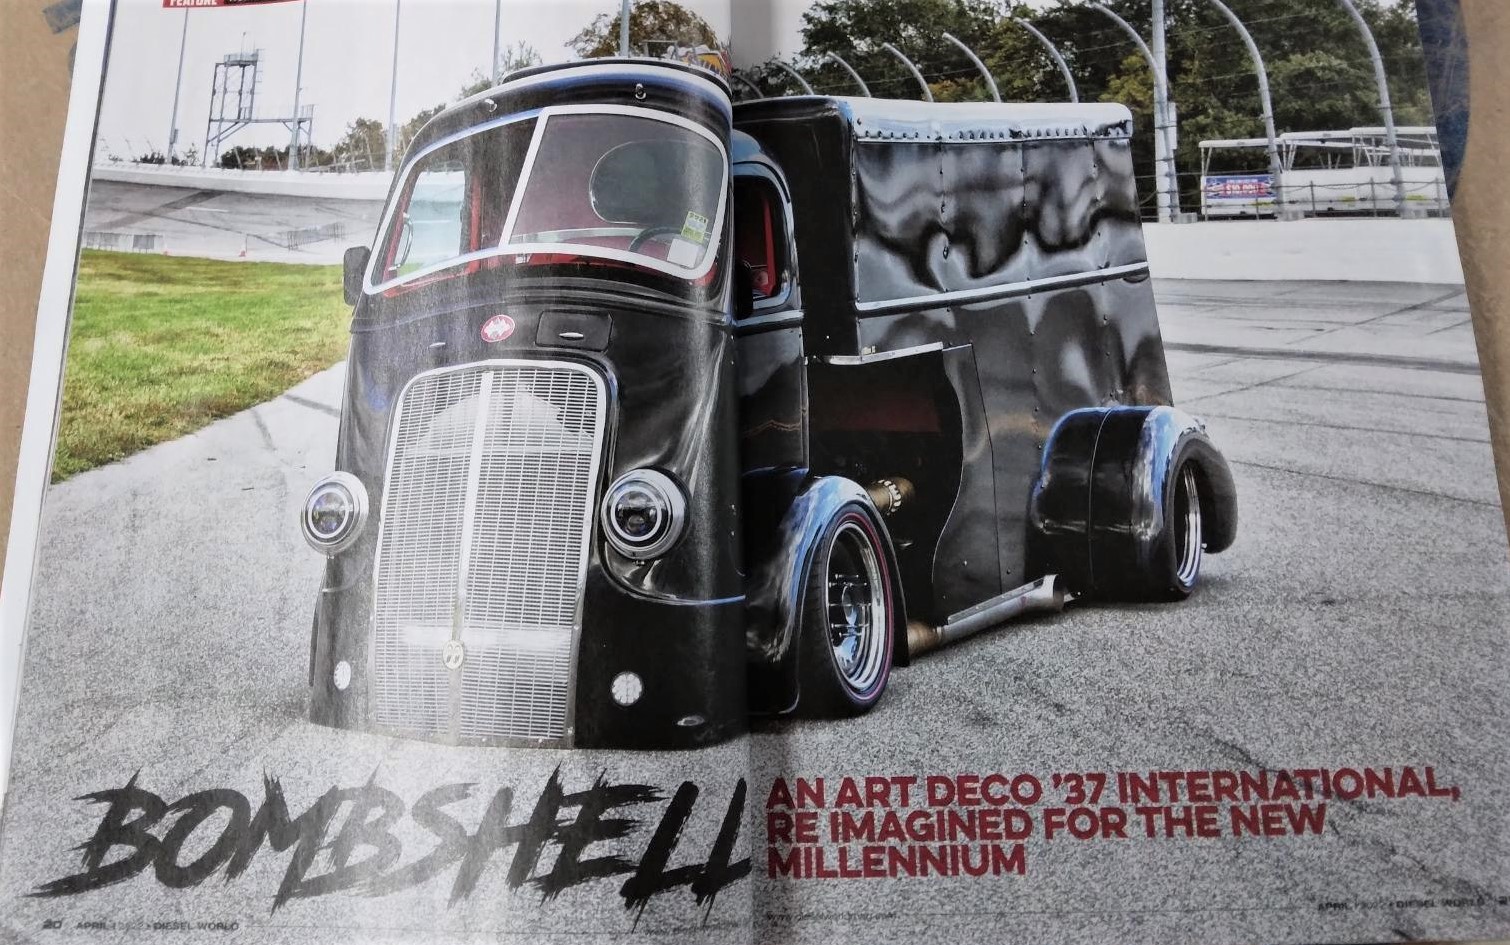 Featured in Diesel World Magazine